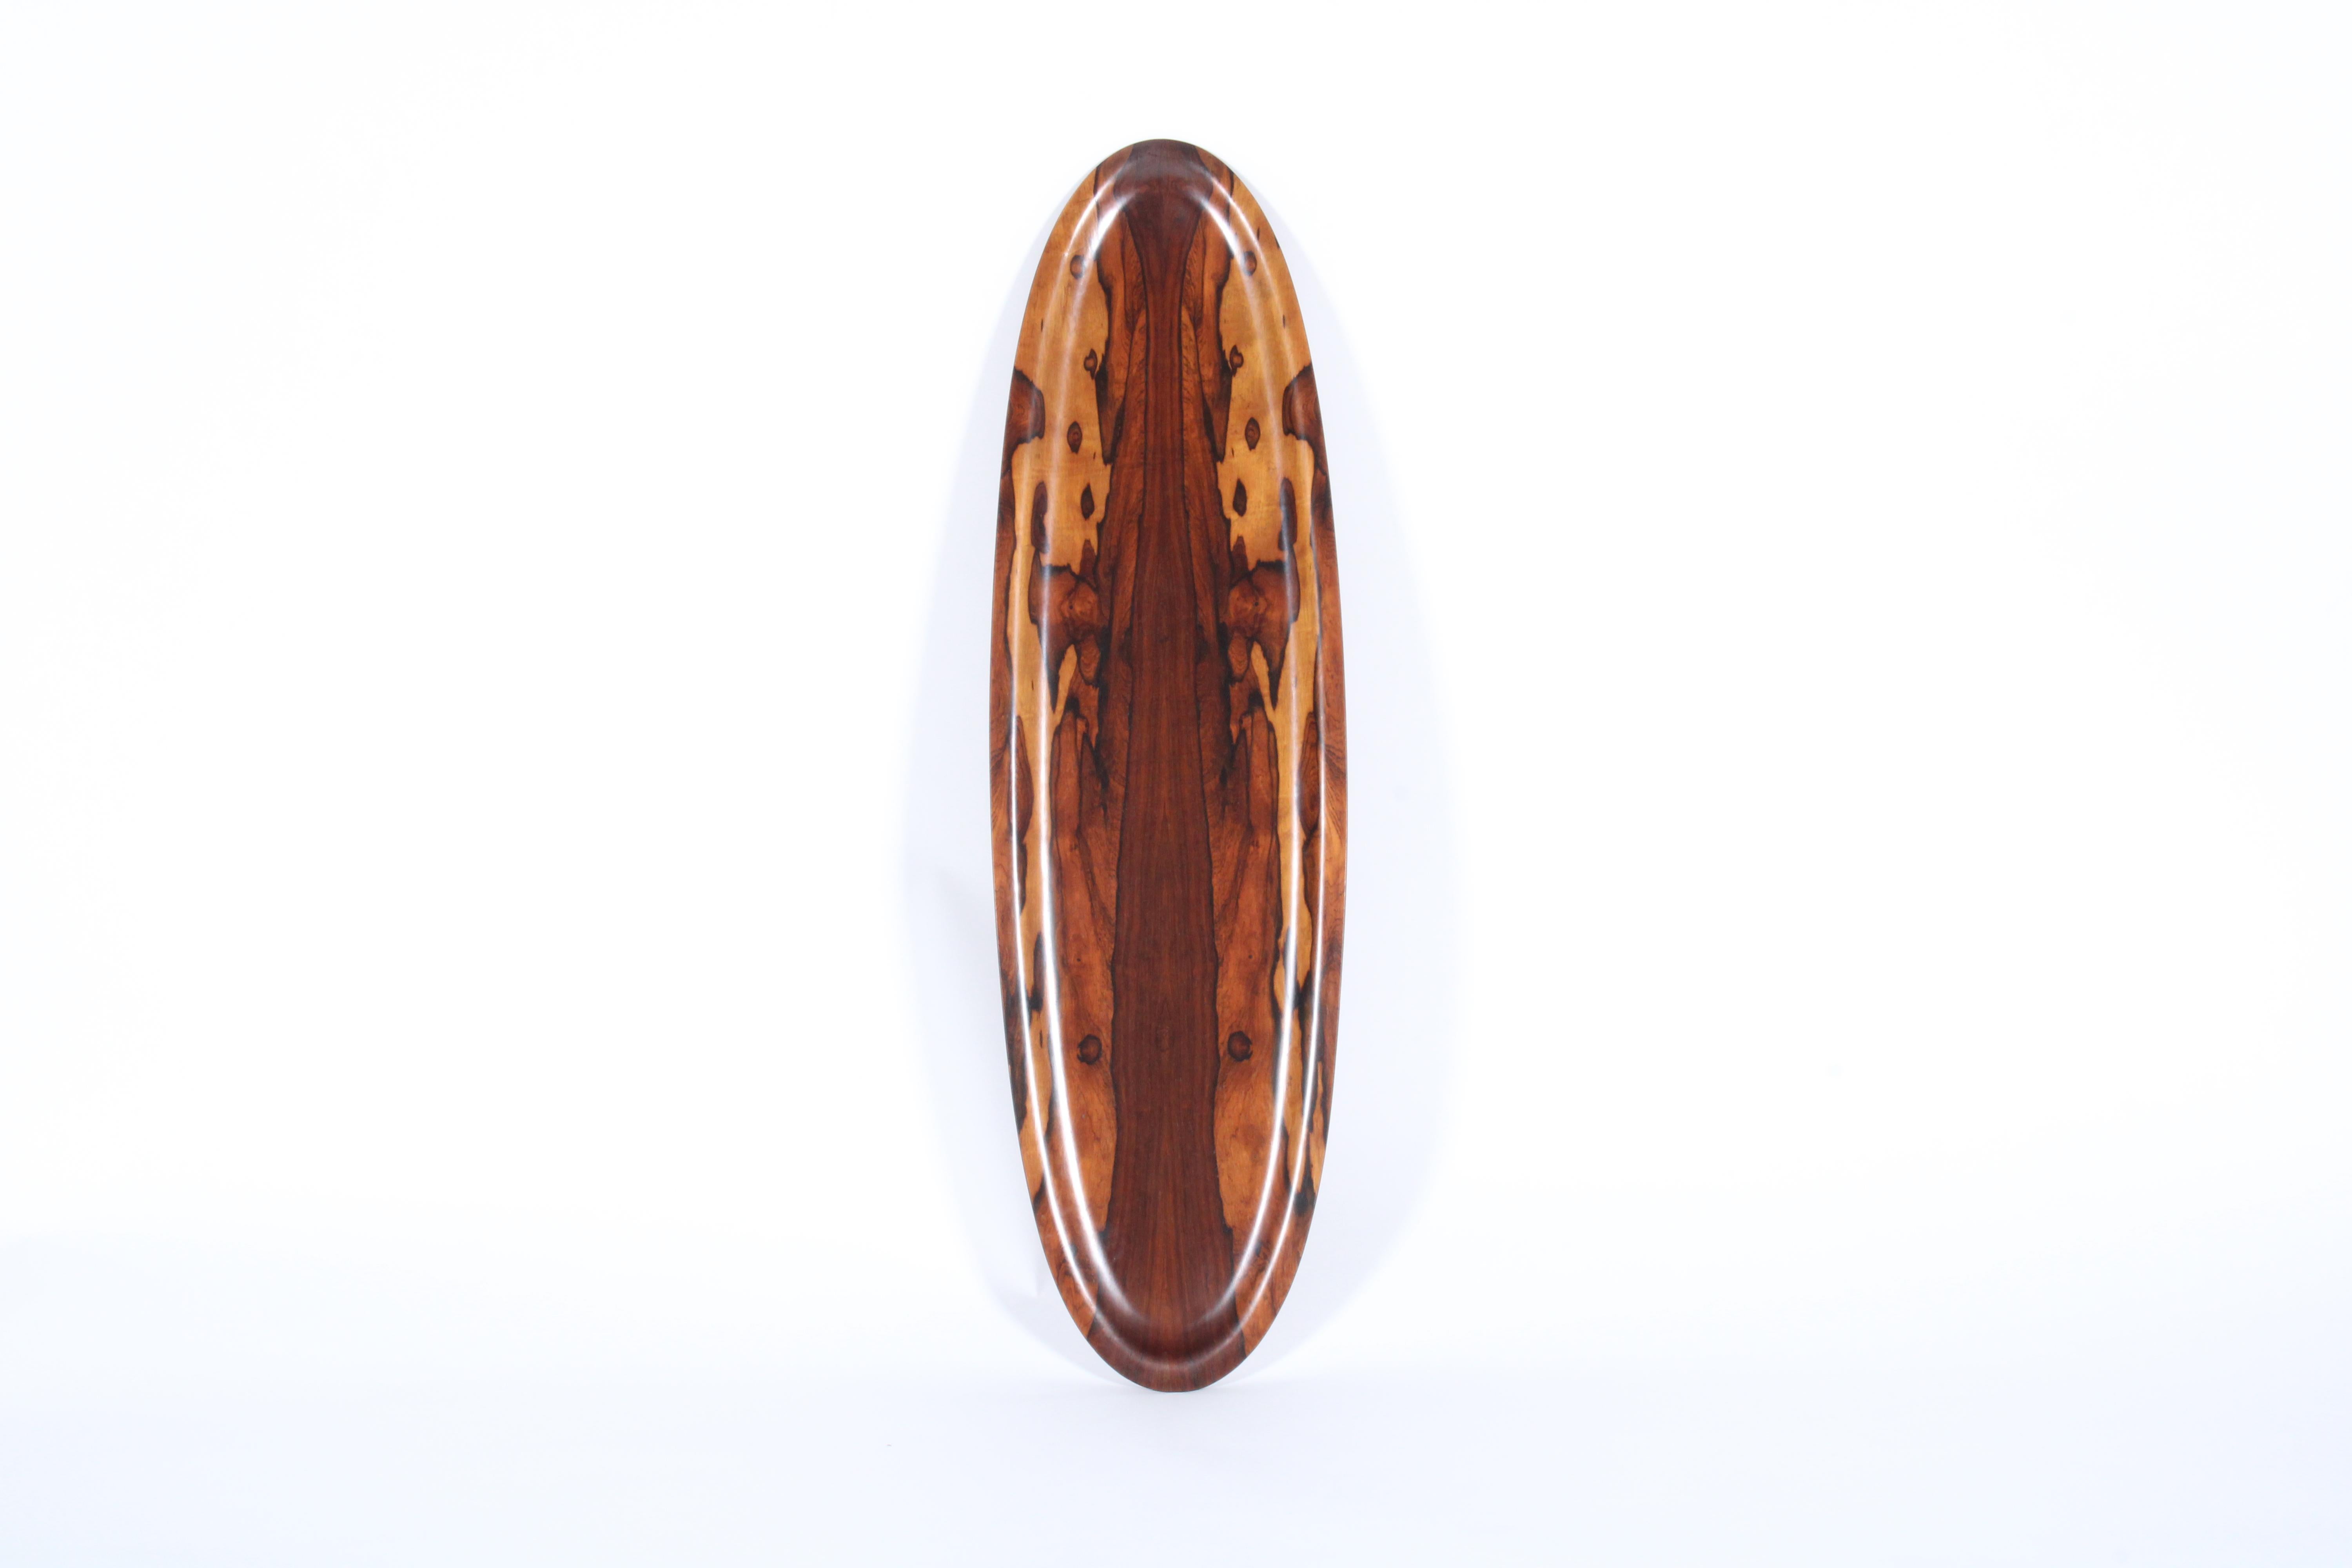 Ein wahrhaft seltener Fund ist dieses unglaublich schöne Kanuschalen-Mittelstück, das aus dem erstaunlichsten Jacaranda-Holz gefertigt ist, einem seltenen Holz mit sensationeller Maserung, das typischerweise für hochwertige Stücke aus der Mitte des